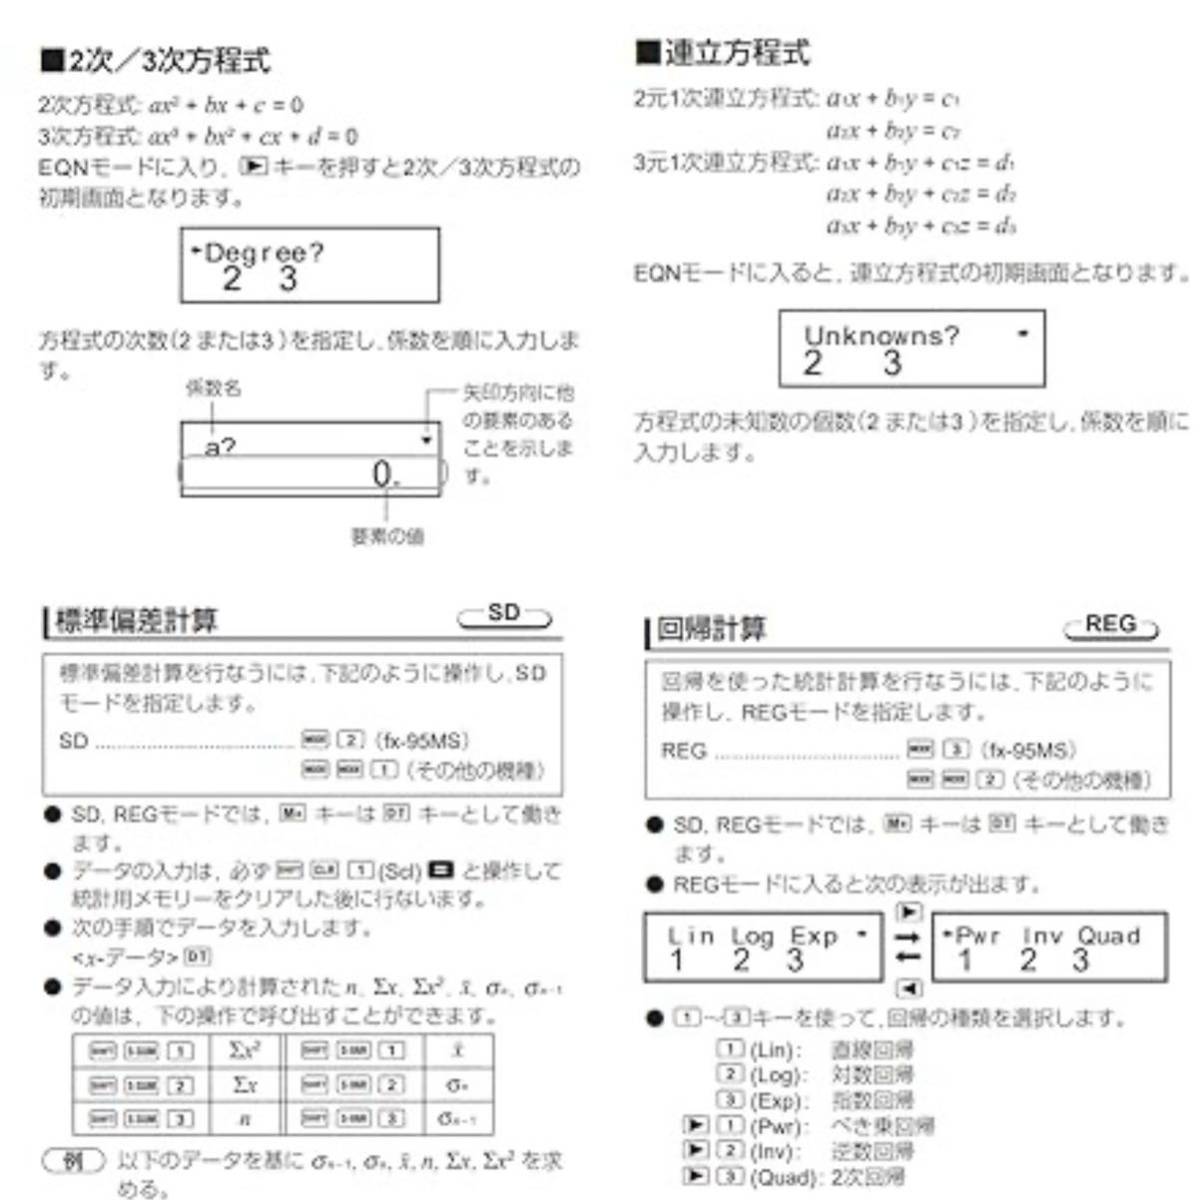 関数電卓 電子メモパッド付き 関数・機能400以上 微分積分・統計計算・数学自然表示 建築現場 数学電卓 折りたたみ式 日本語説明書付き_画像10